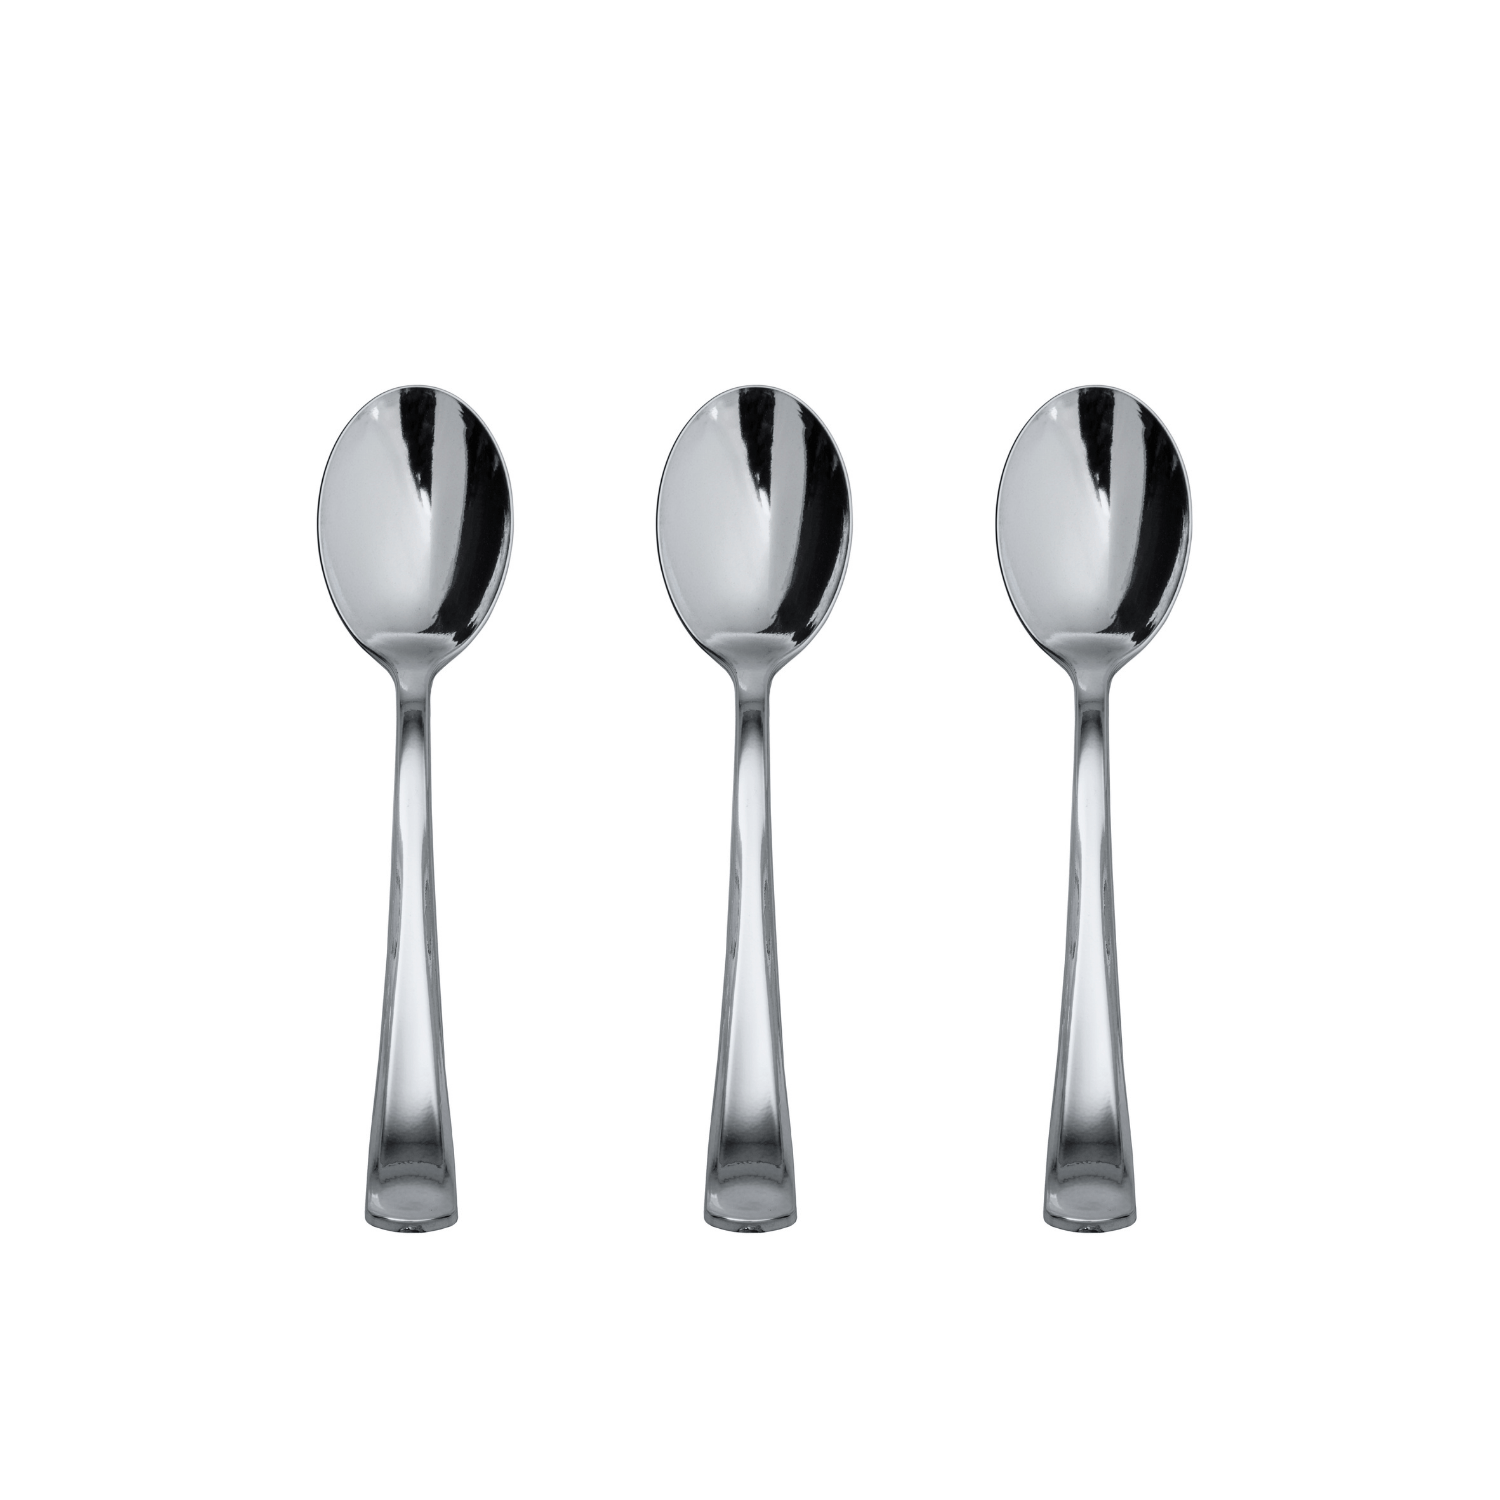 Exquisite Silver Plastic Tea Spoons | 480 Count